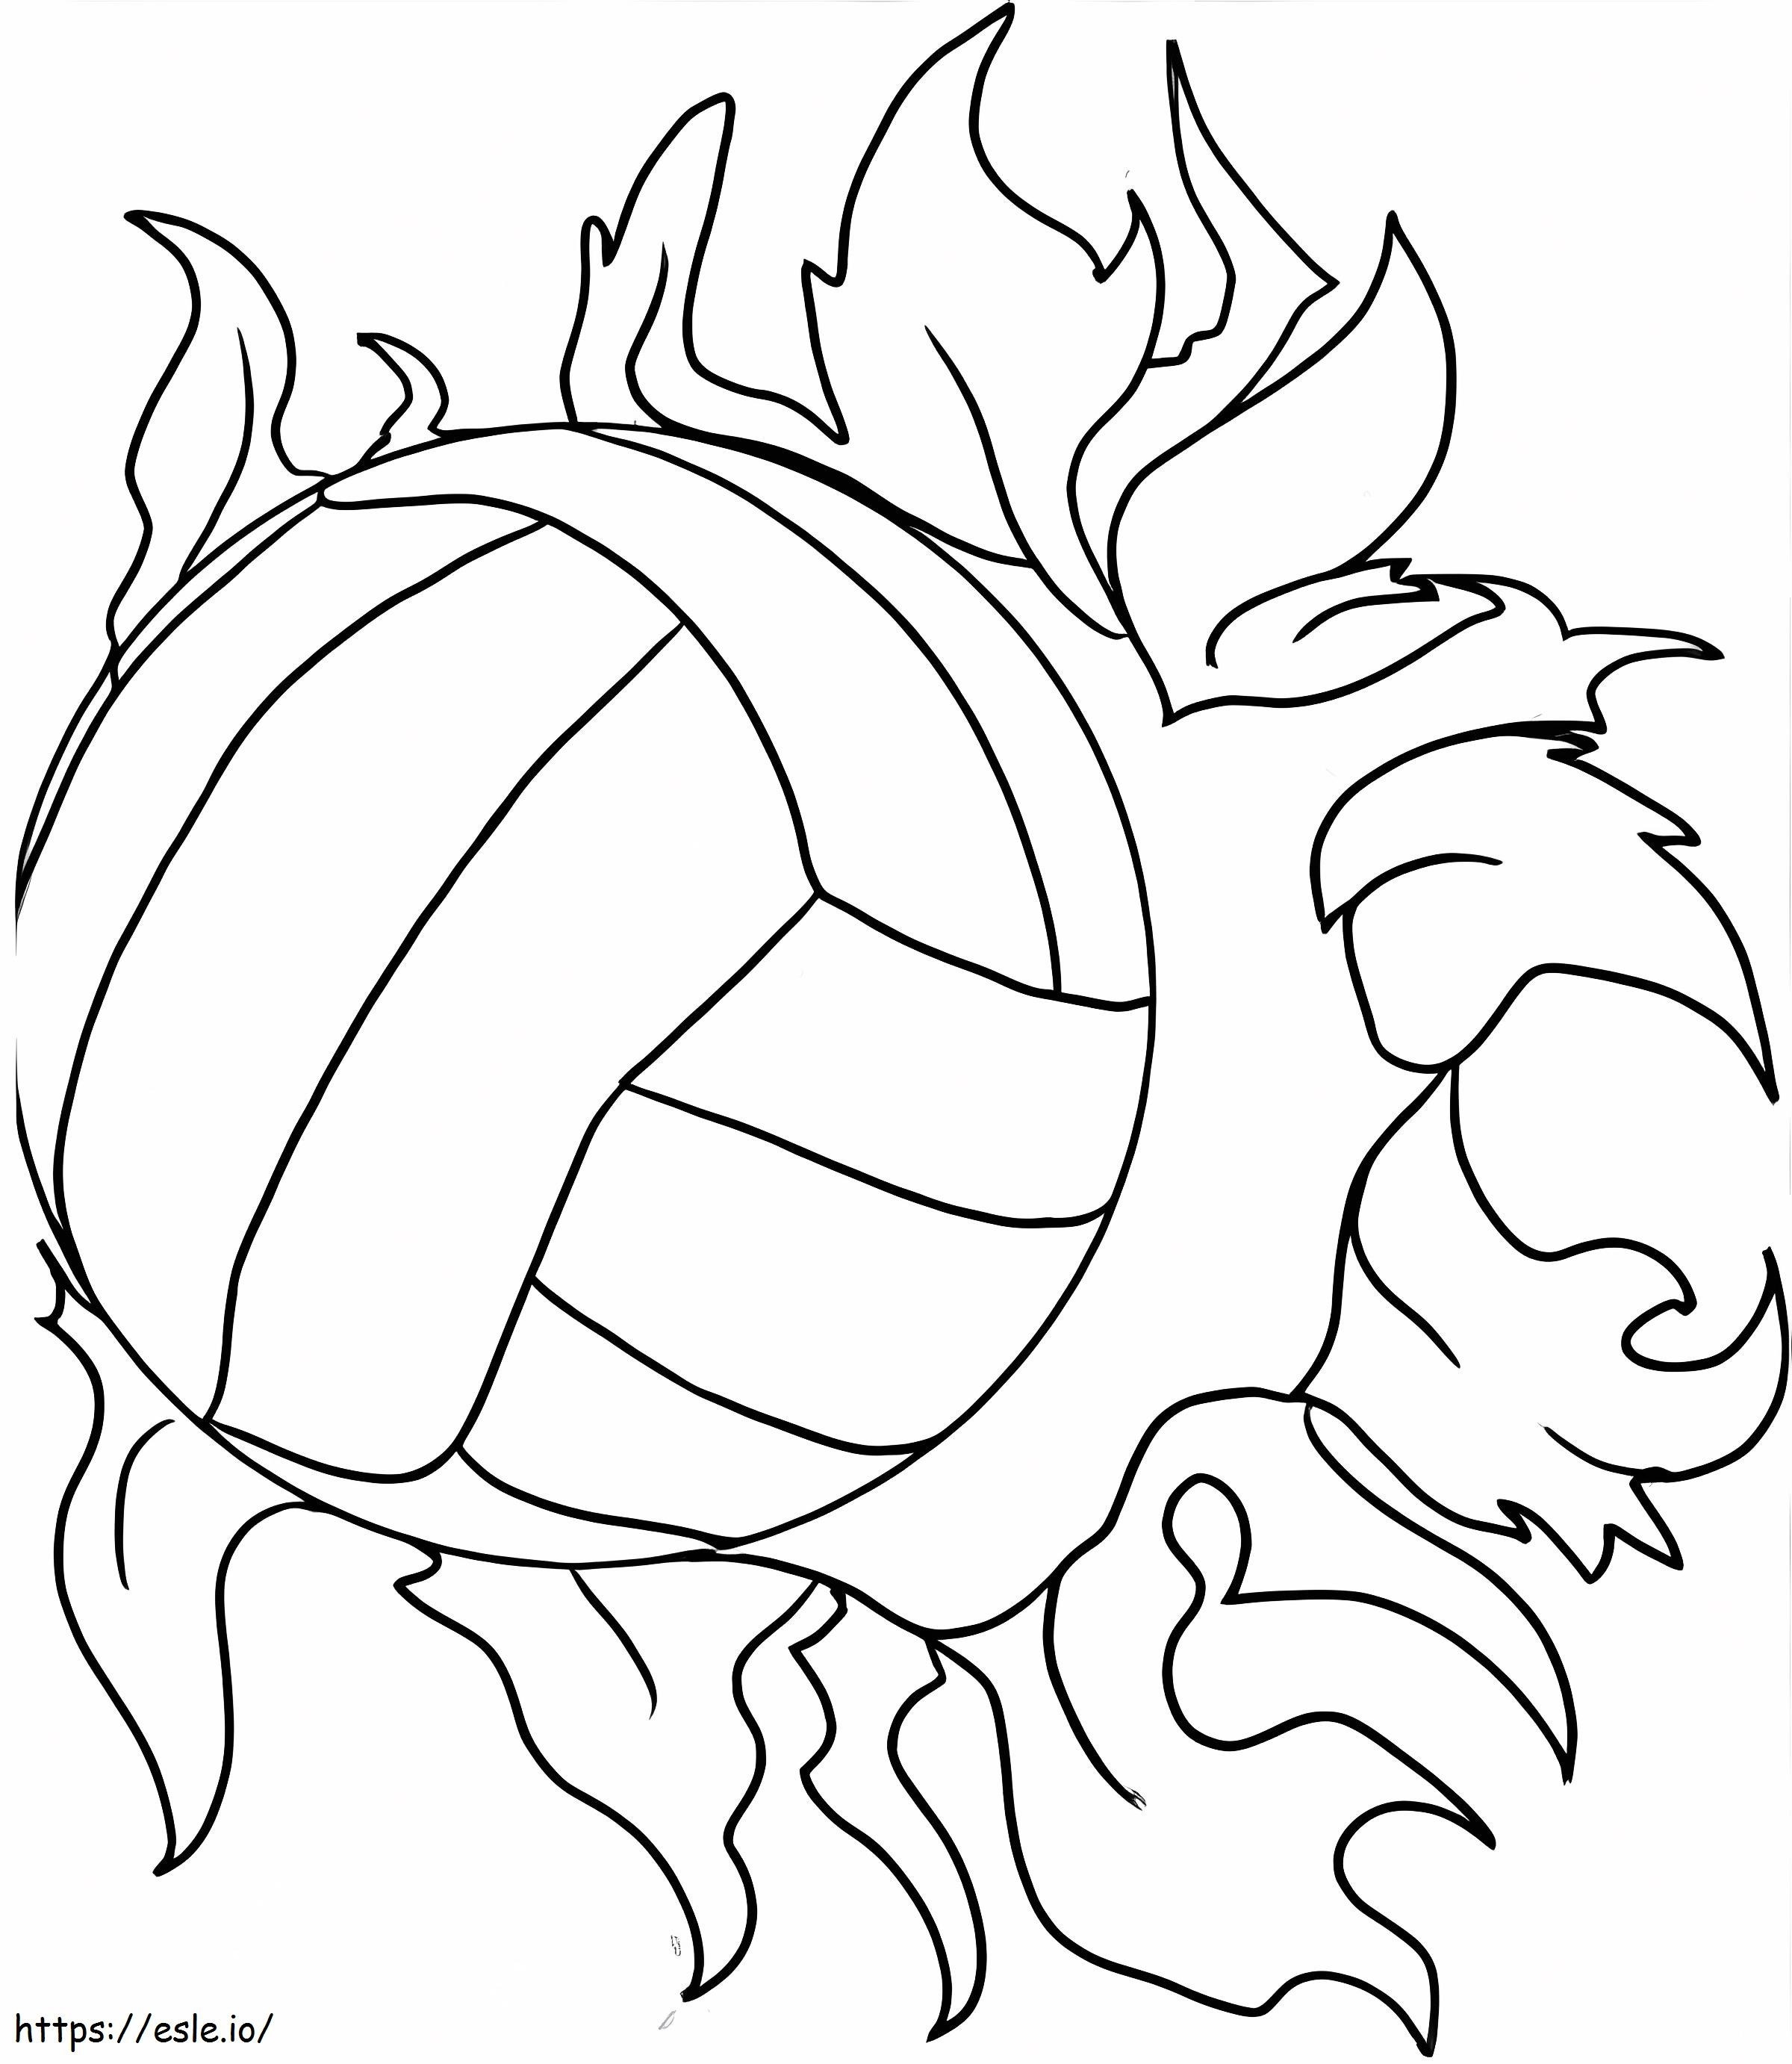 Dibujos para colorear de voleibol superpoderoso para colorear